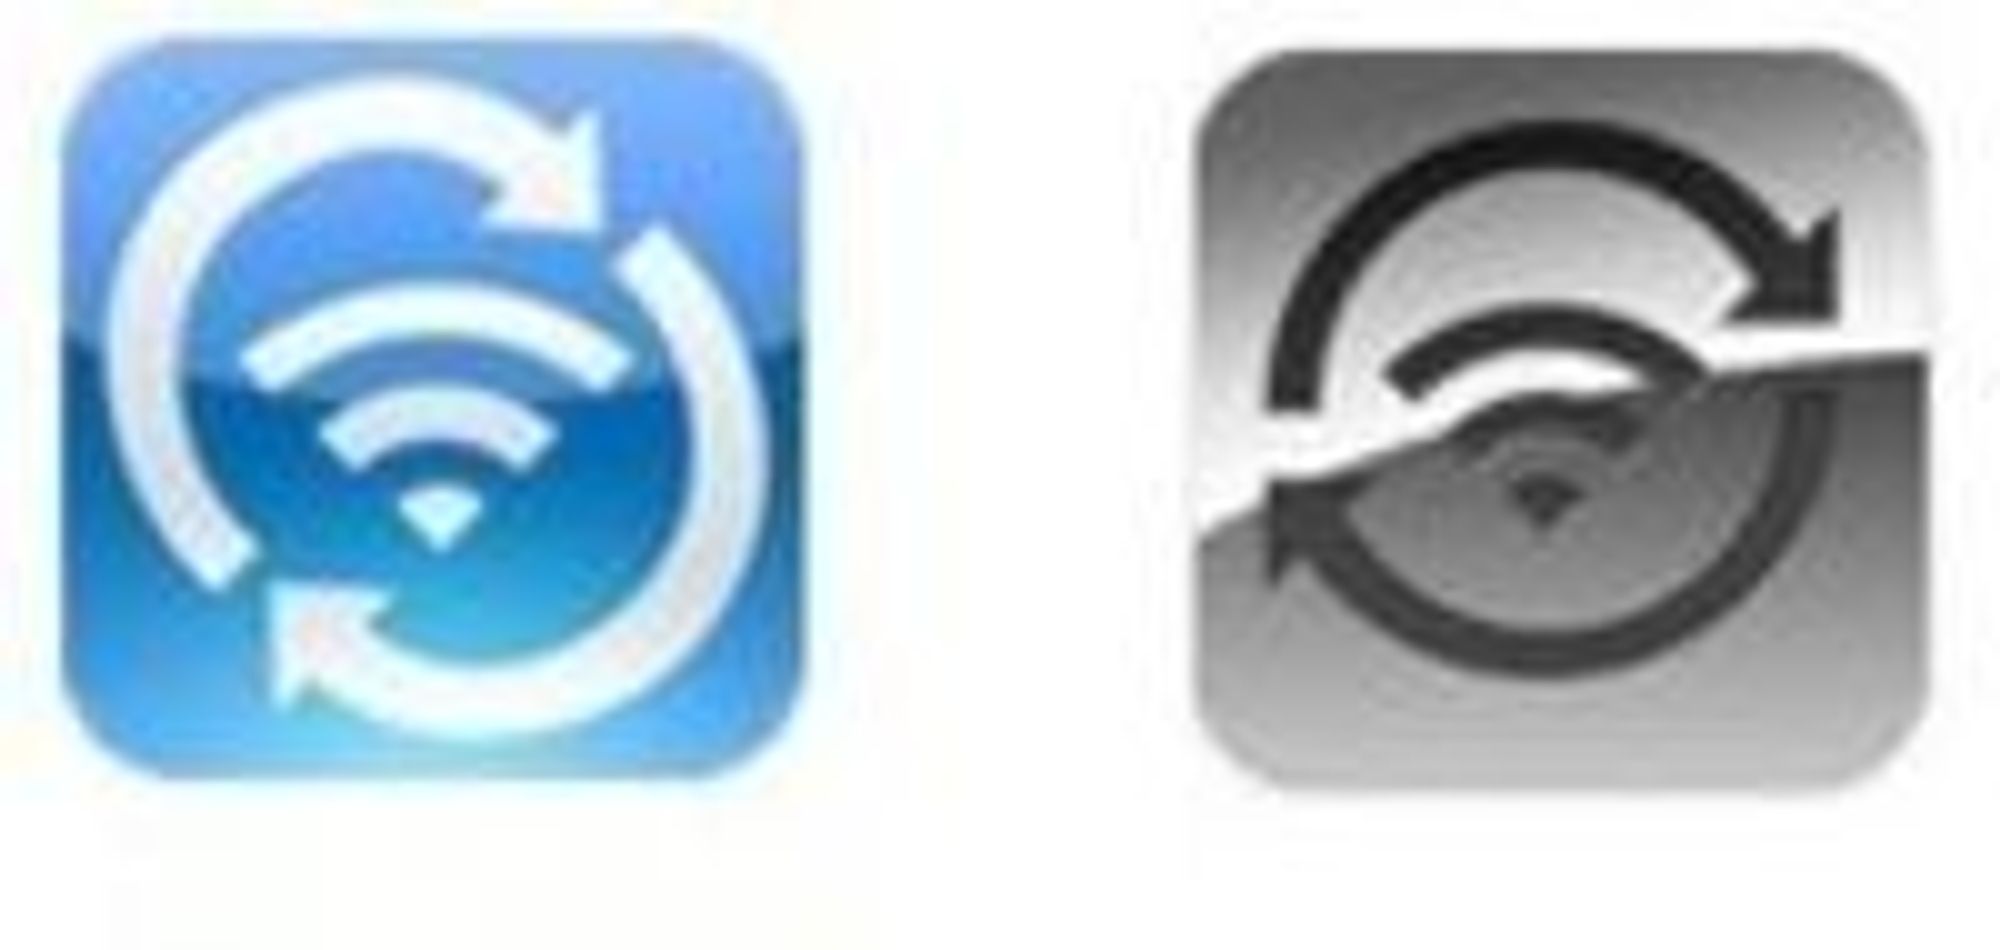 Greg Hughes' Wi-Fi Sync benytter ikonet til venstre. Apples symbol for funksjonen med samme navn til høyre.